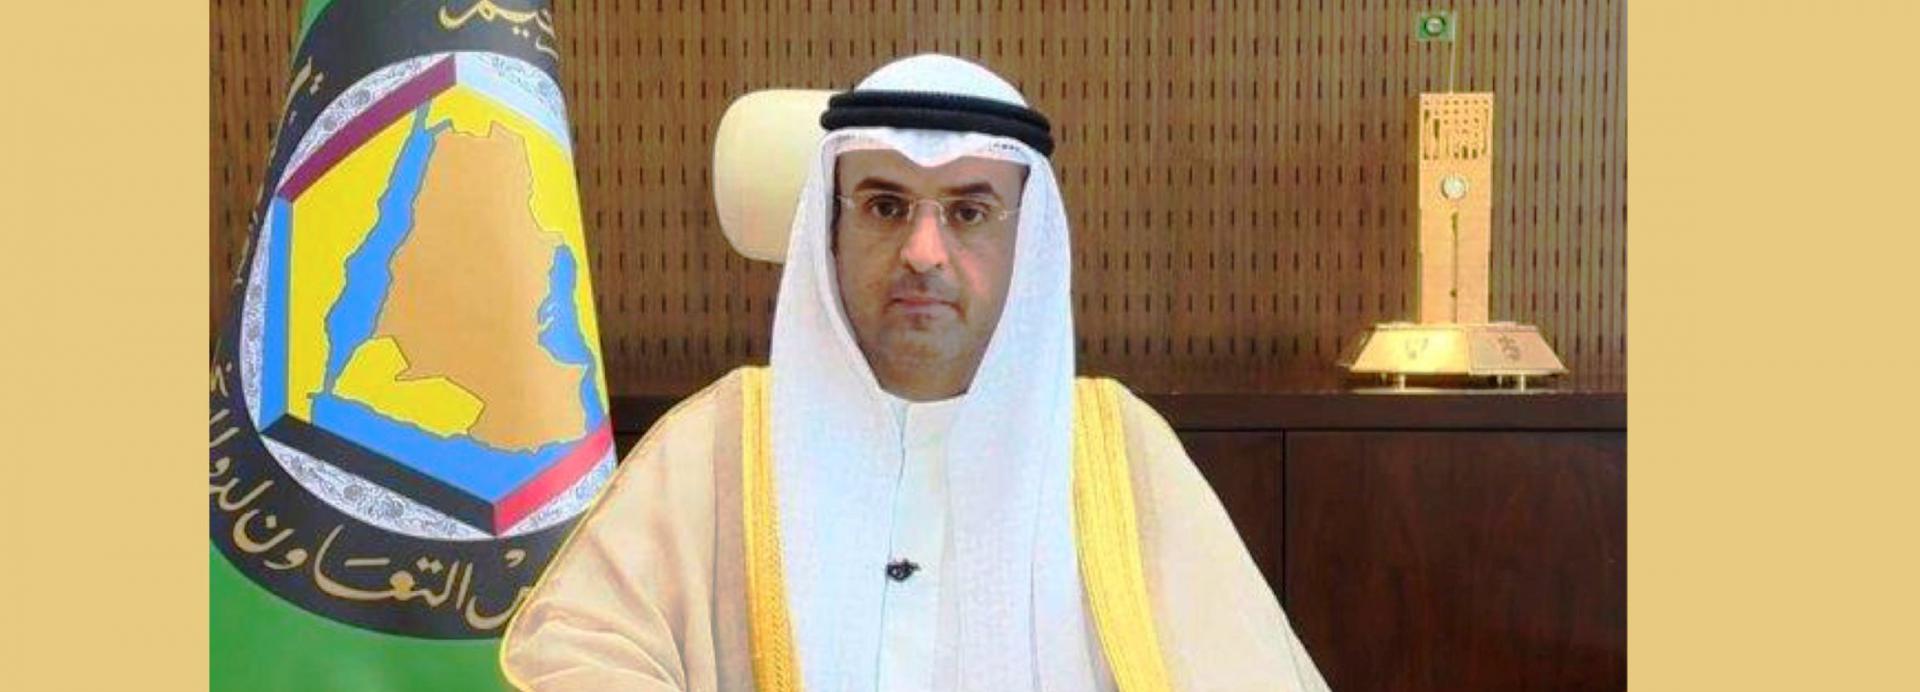 الأمين العام لمجلس التعاون الخليجي نايف فلاح مبارك الحجرف 